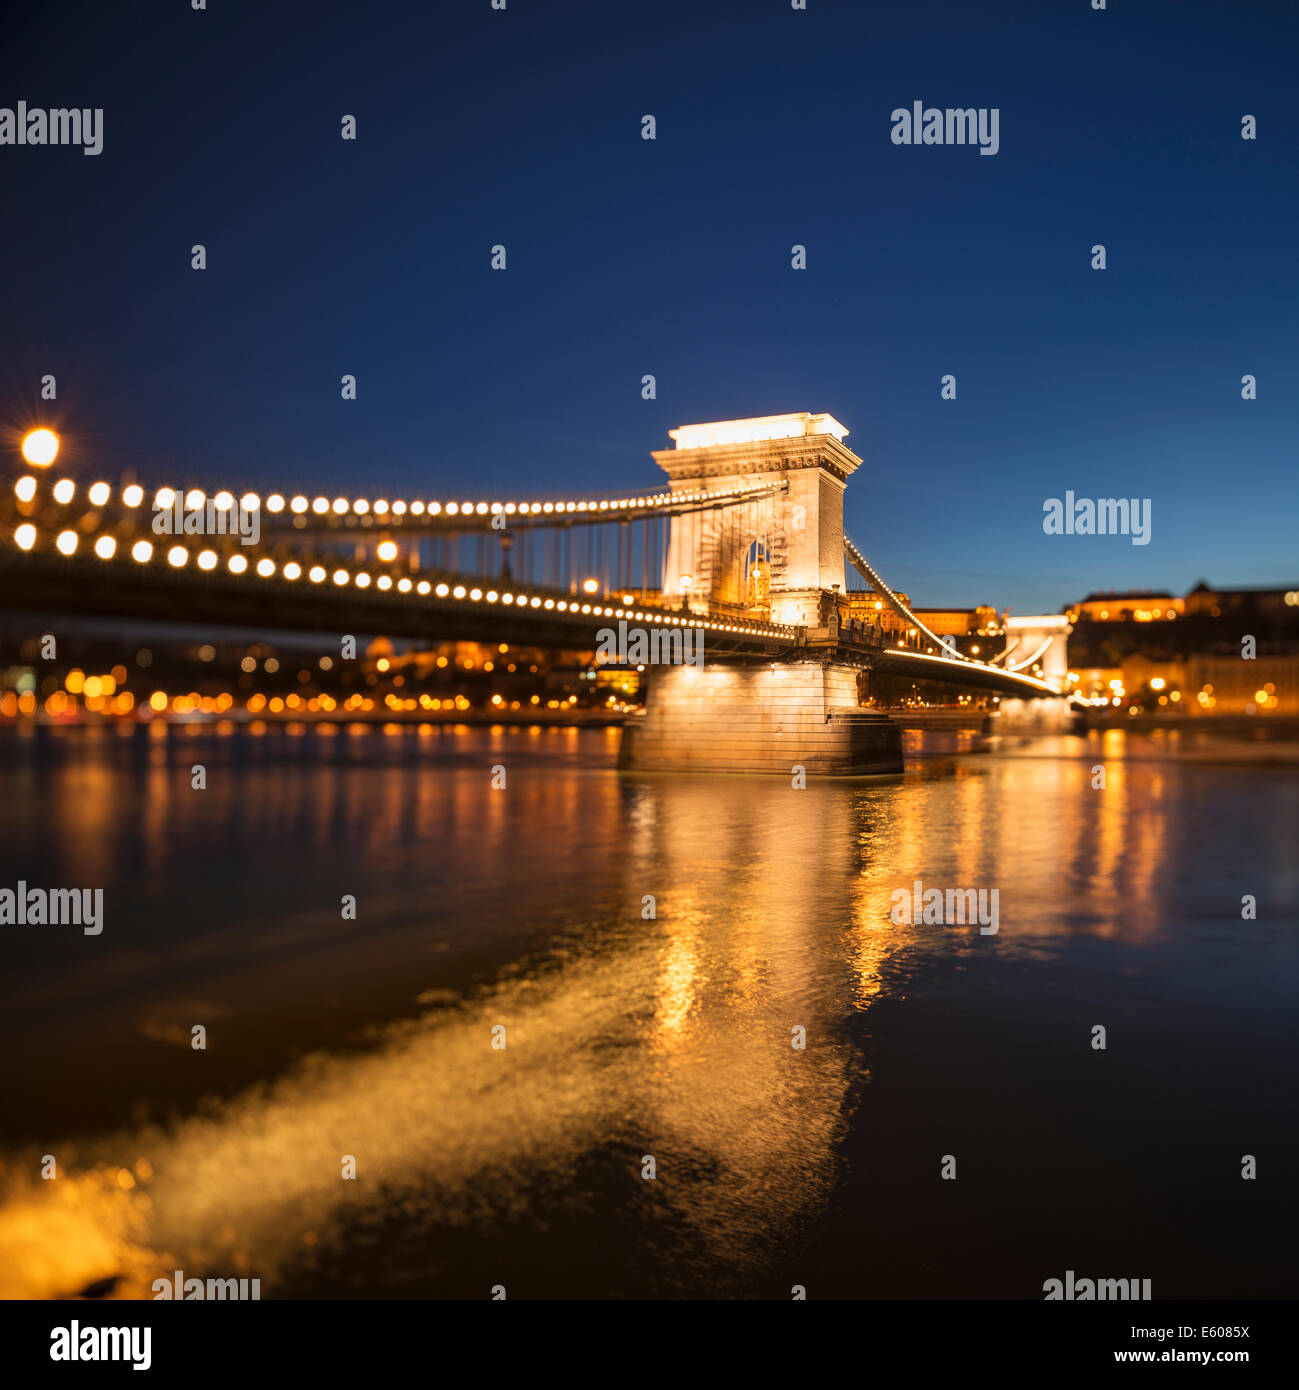 Széchenyi lánchíd - Széchenyi Chain Bridge and Danube river at night, Budapest, Hungary Stock Photo